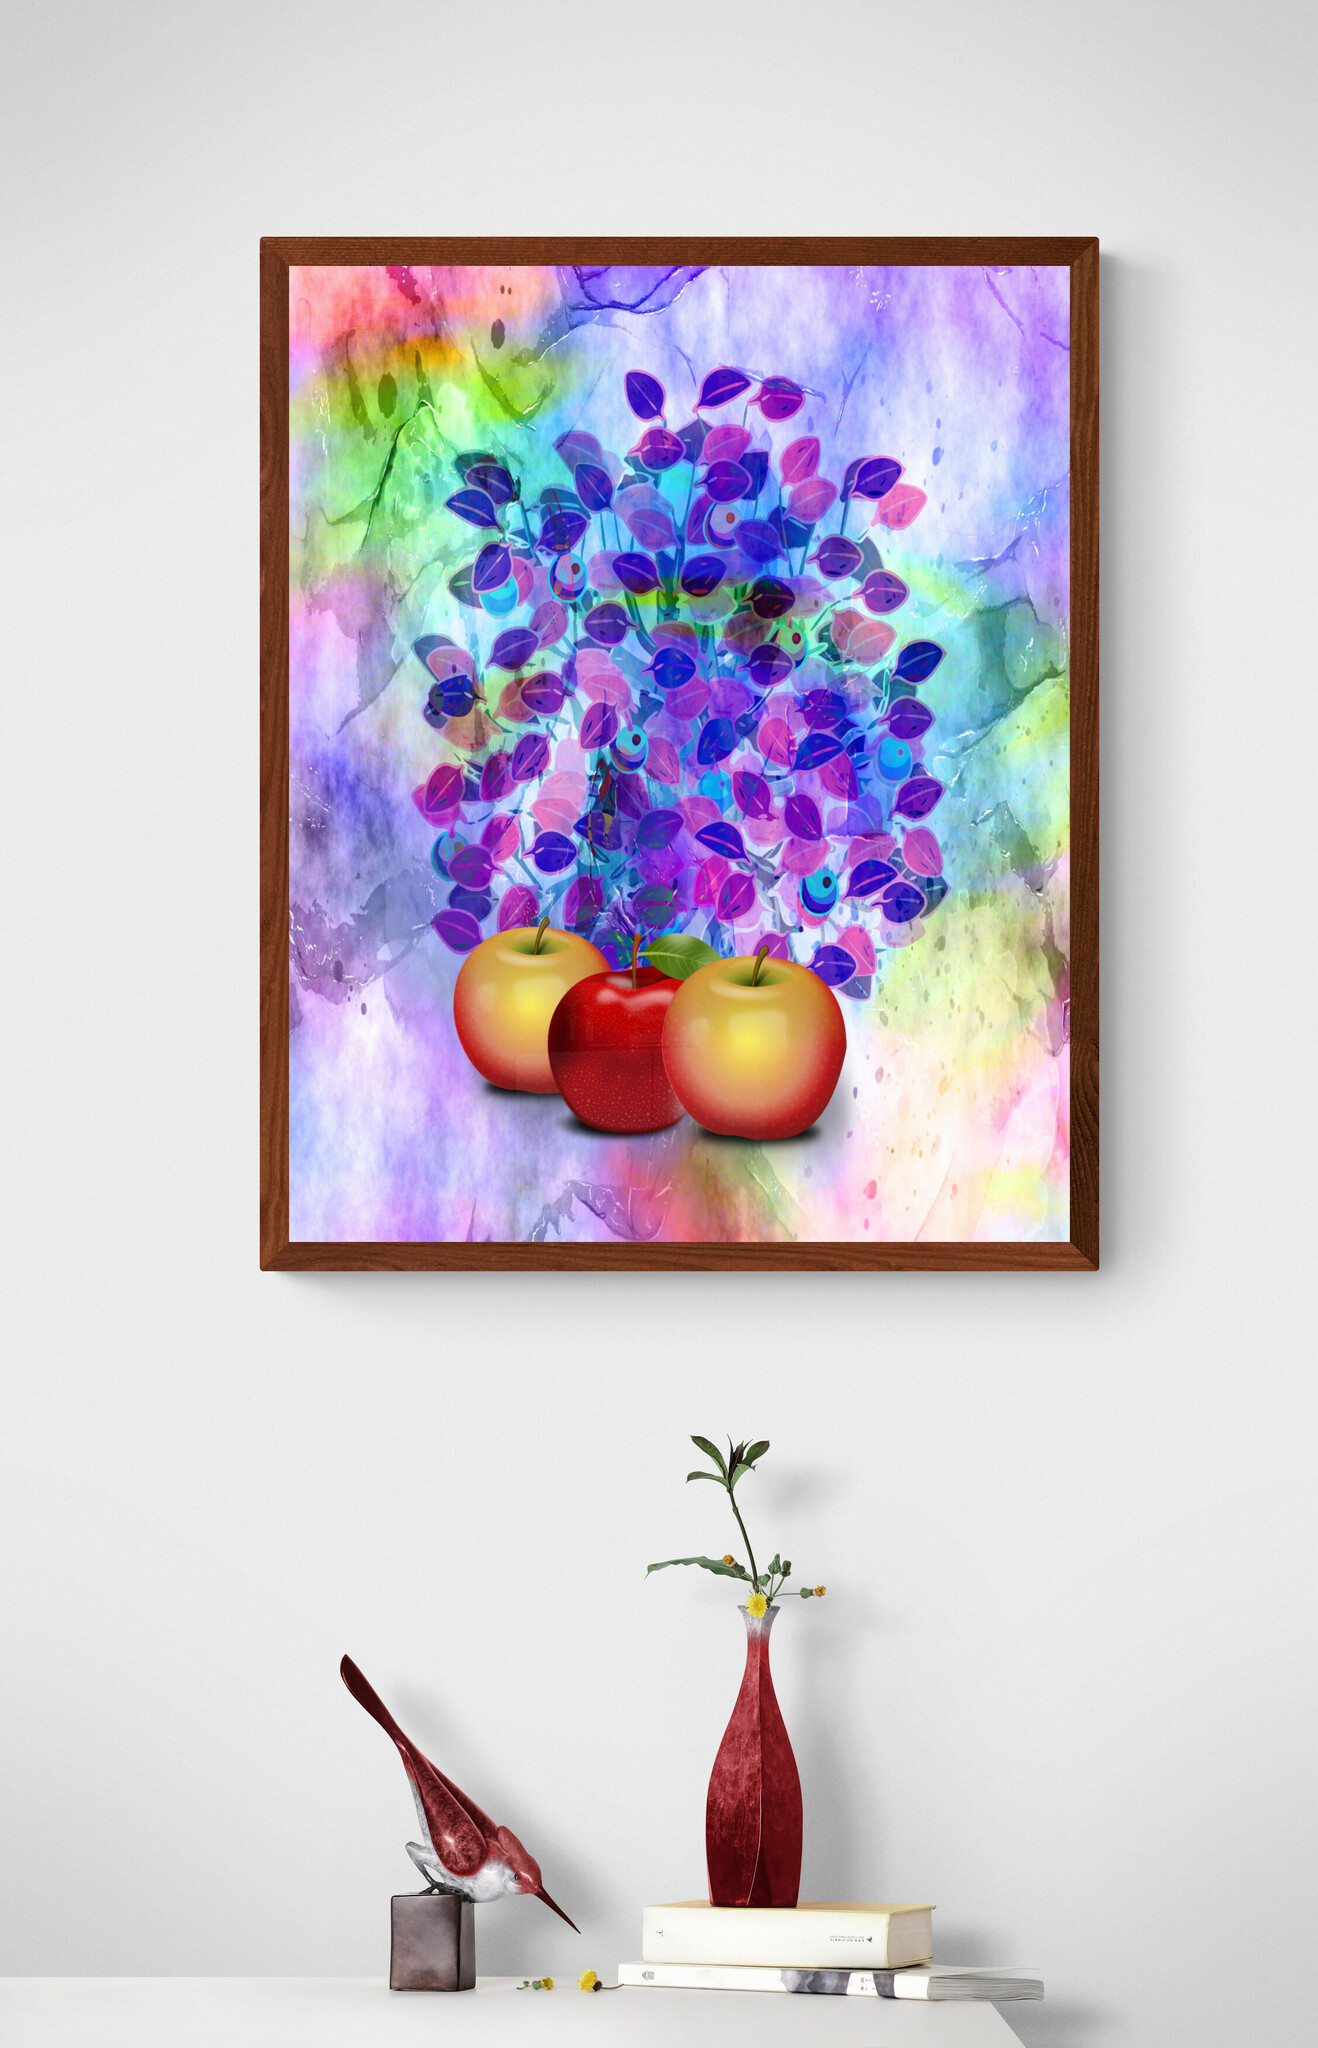 Graphic Art "Fruit that appeals"